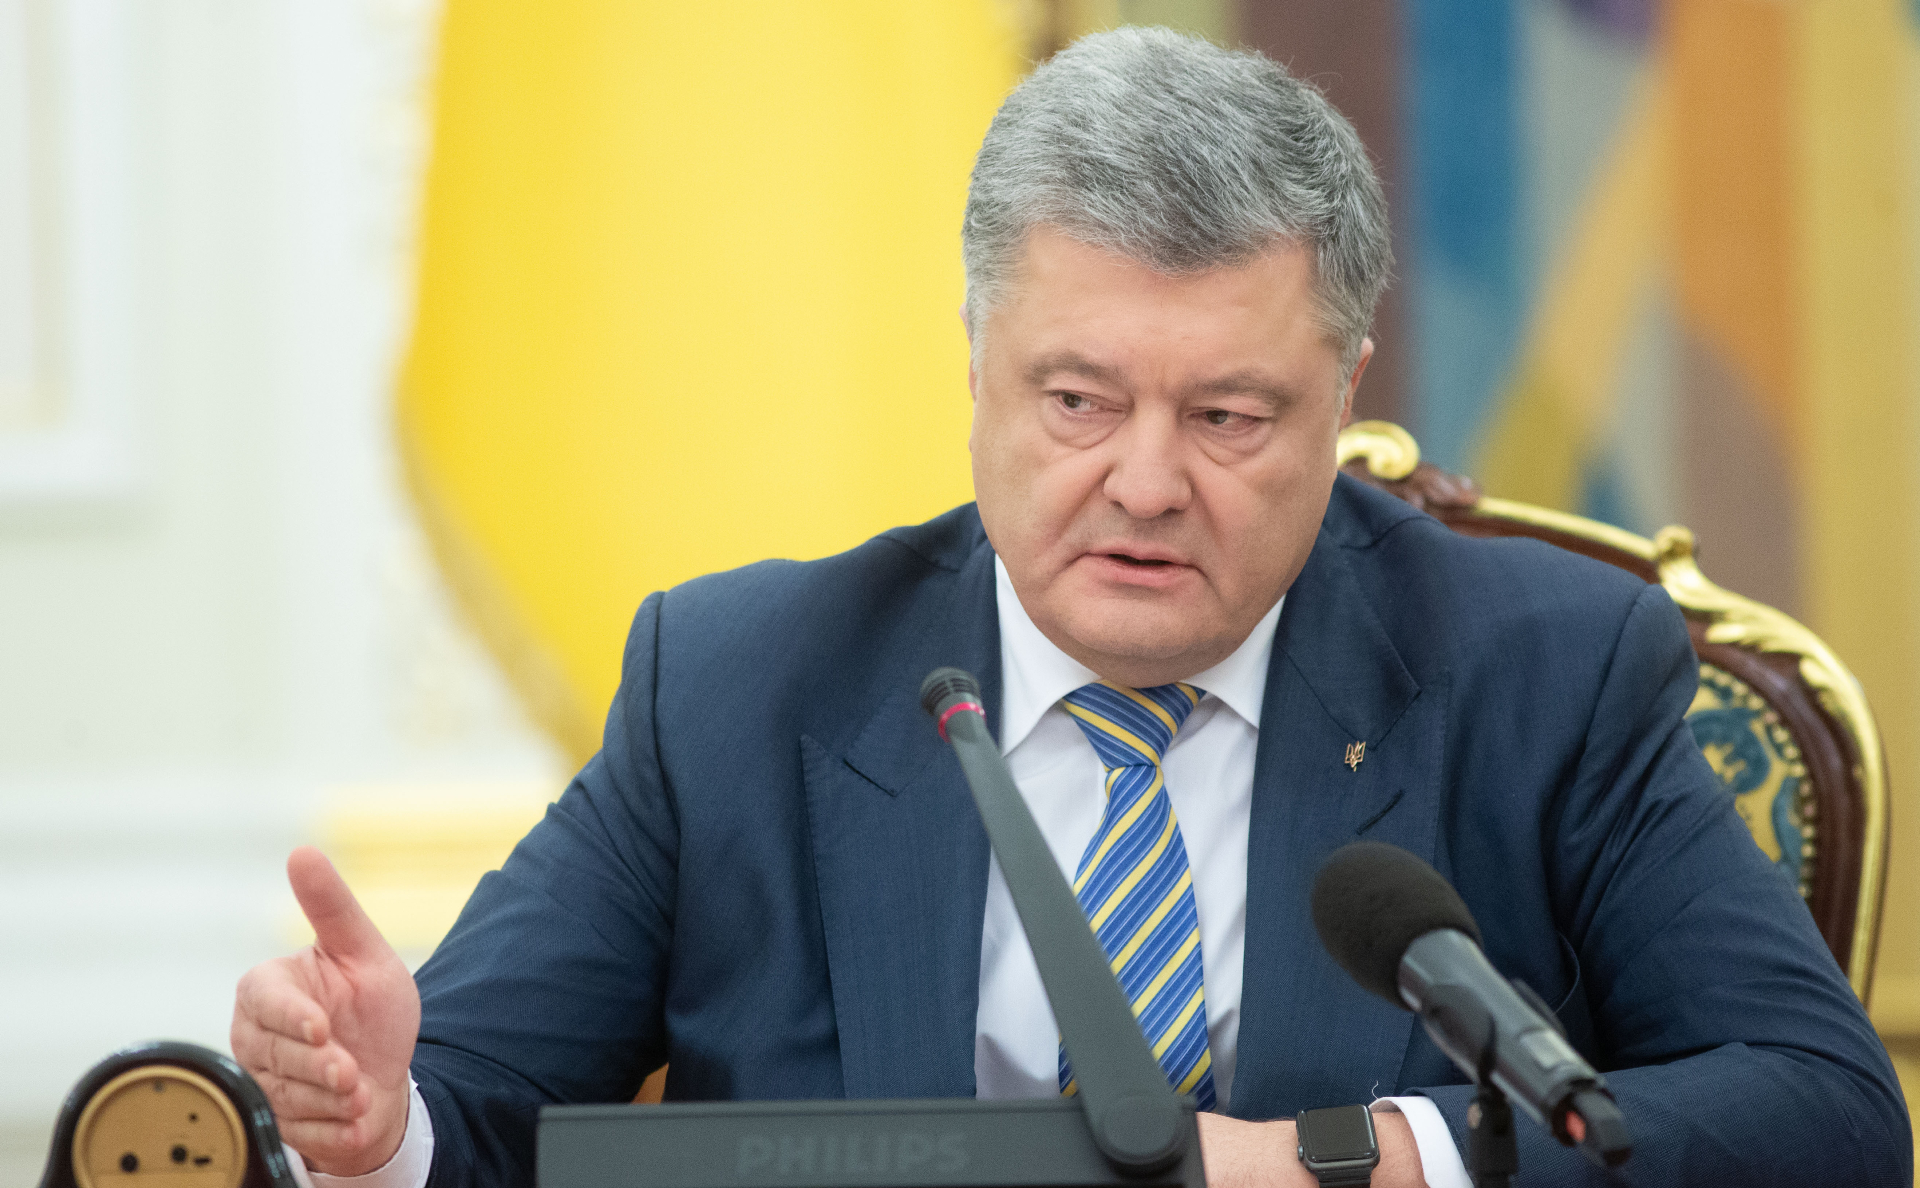 Фото: Пресс-служба президента Украины / РИА Новости